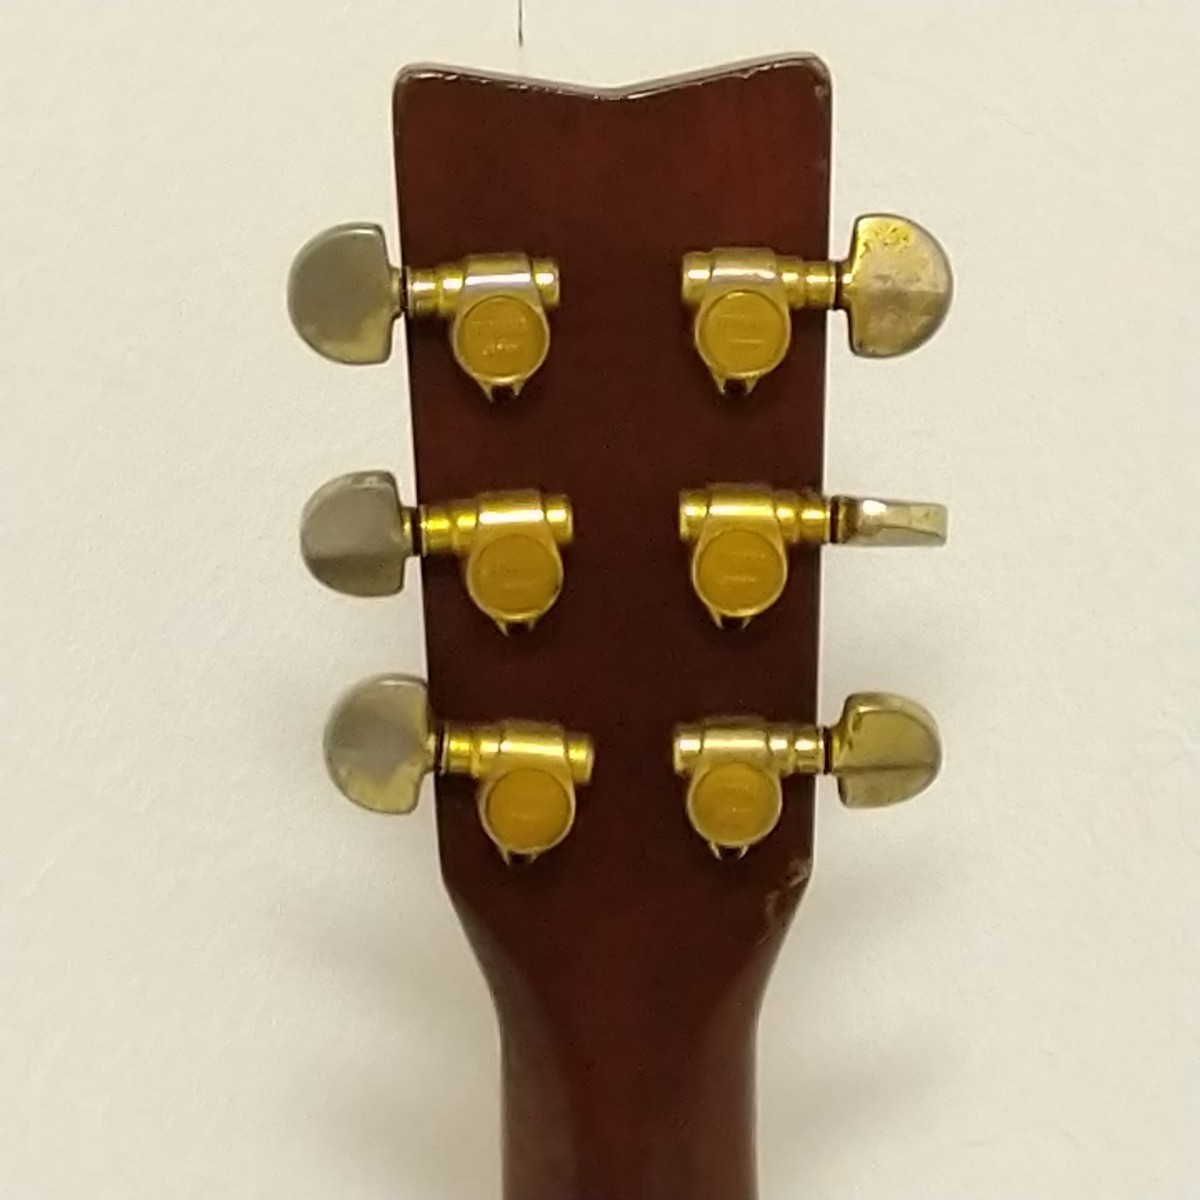 YAMAHA FG-401W ヤマハ アコースティックギター オレンジラベル 日本製 アコギ MADE IN JAPAN 弦楽器_画像8